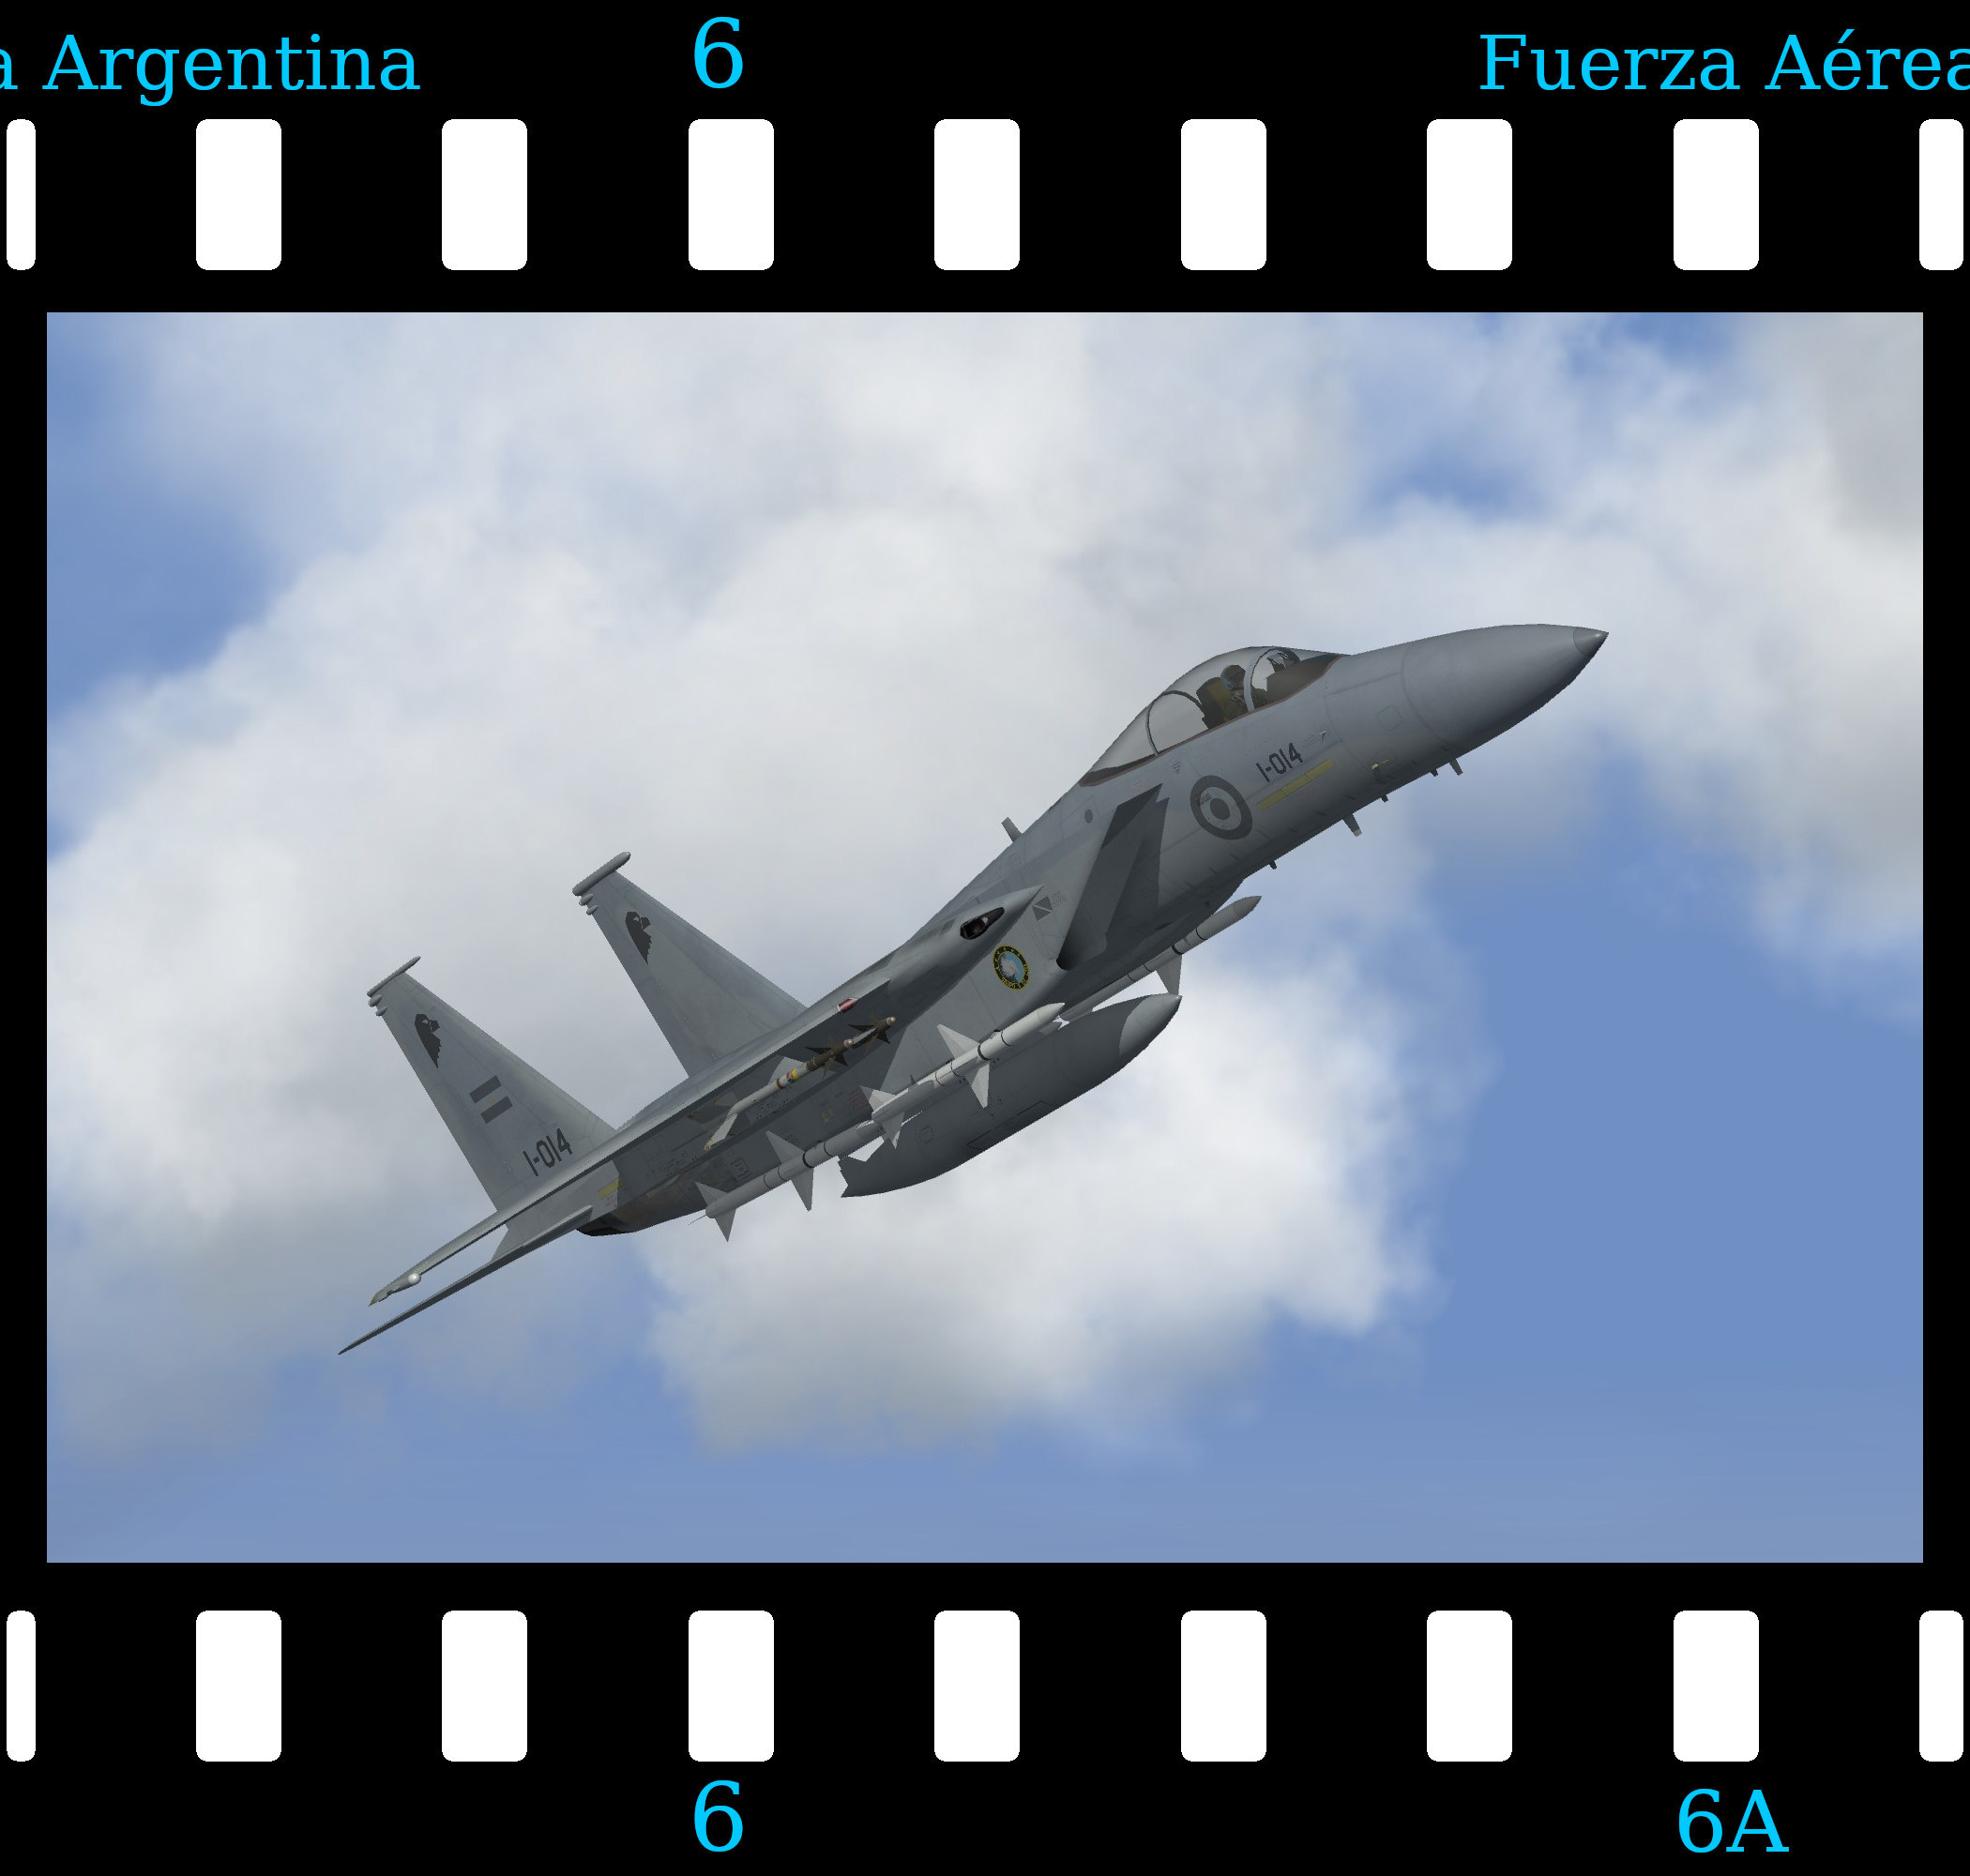 [Fictional] McDonnell Douglas F-15A Eagle 'Argentina'